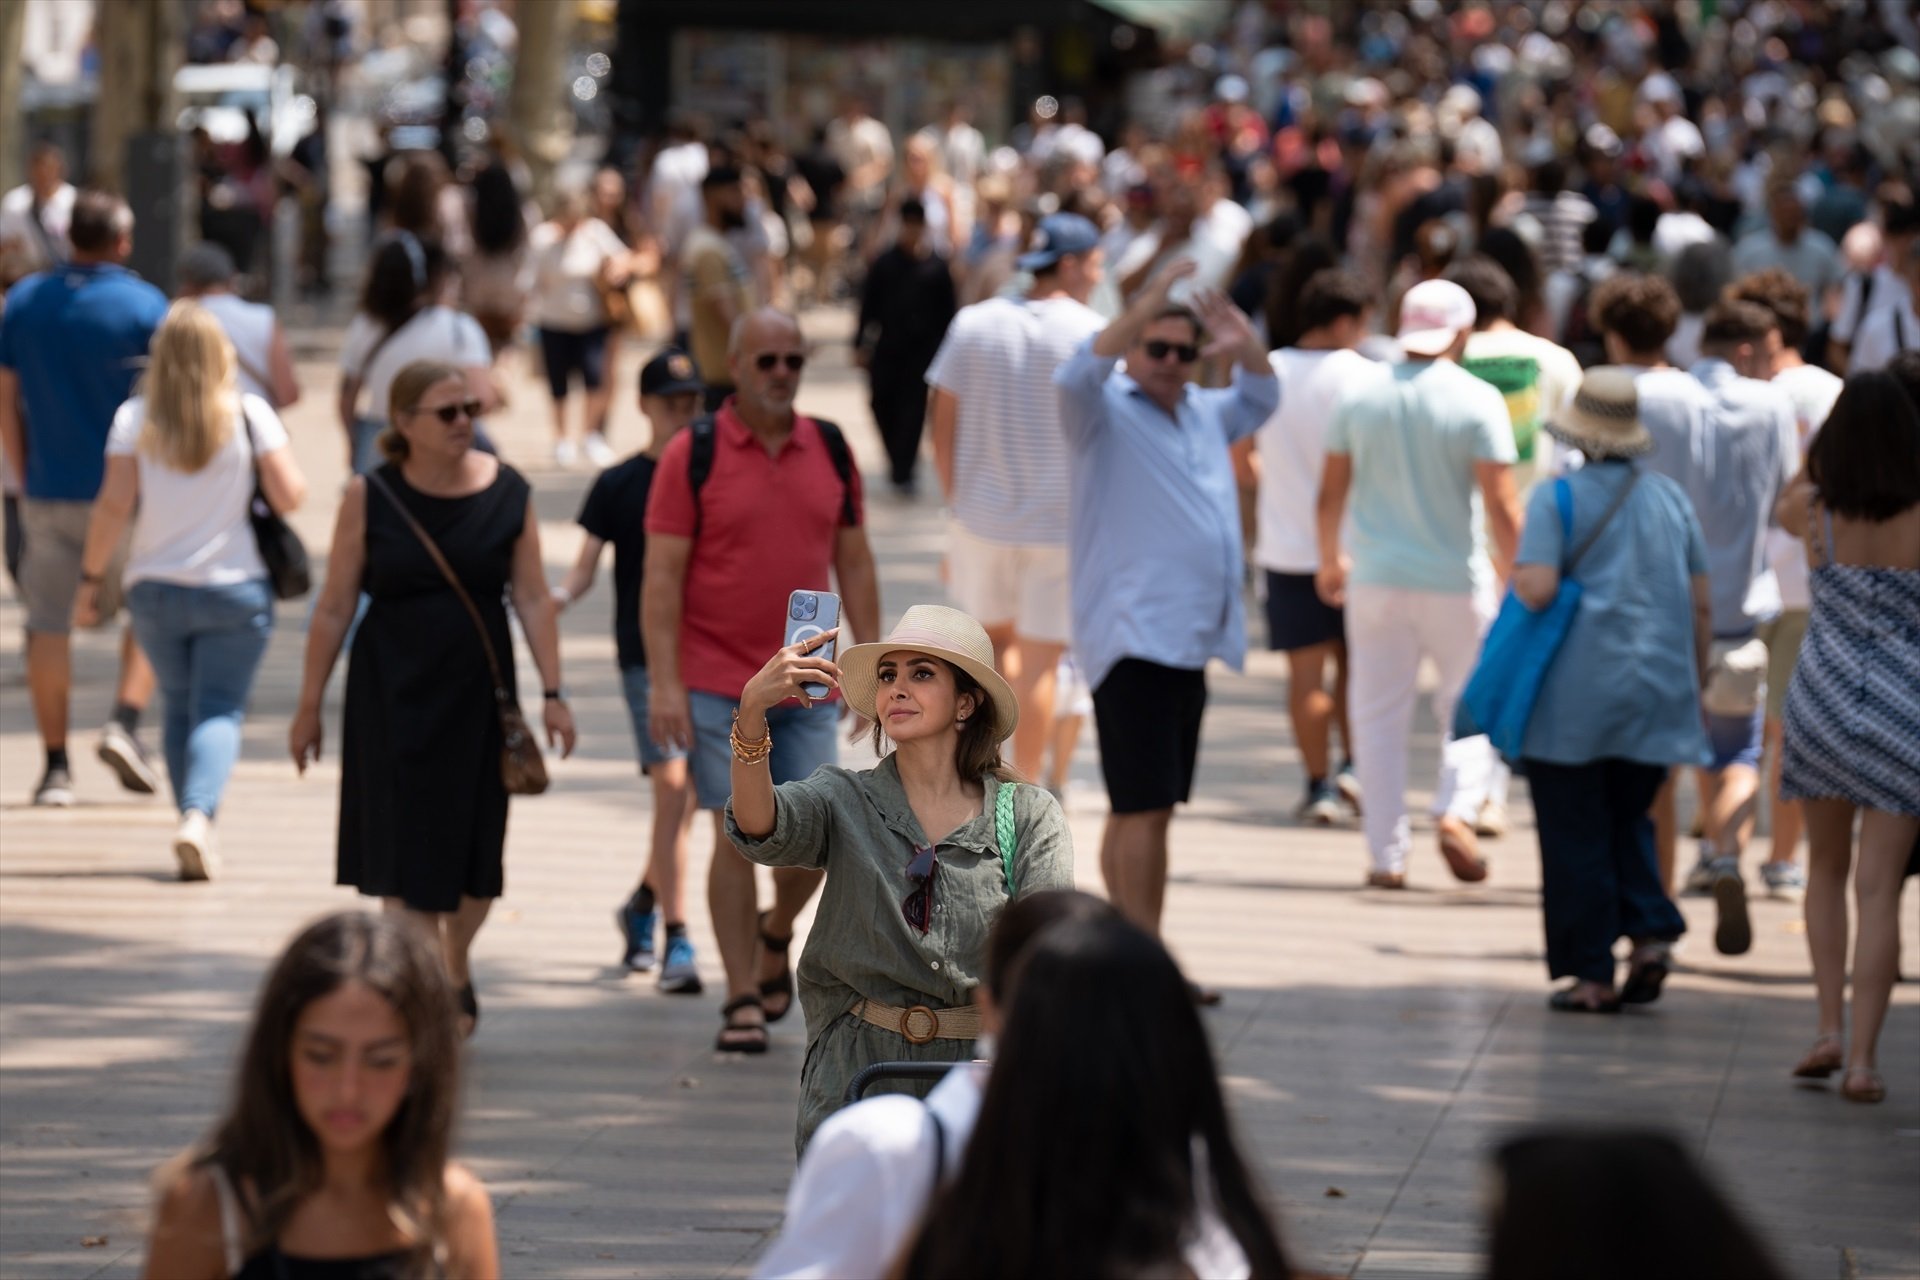 El 70,9% de la población de Barcelona considera el turismo beneficioso, según un sondeo municipal